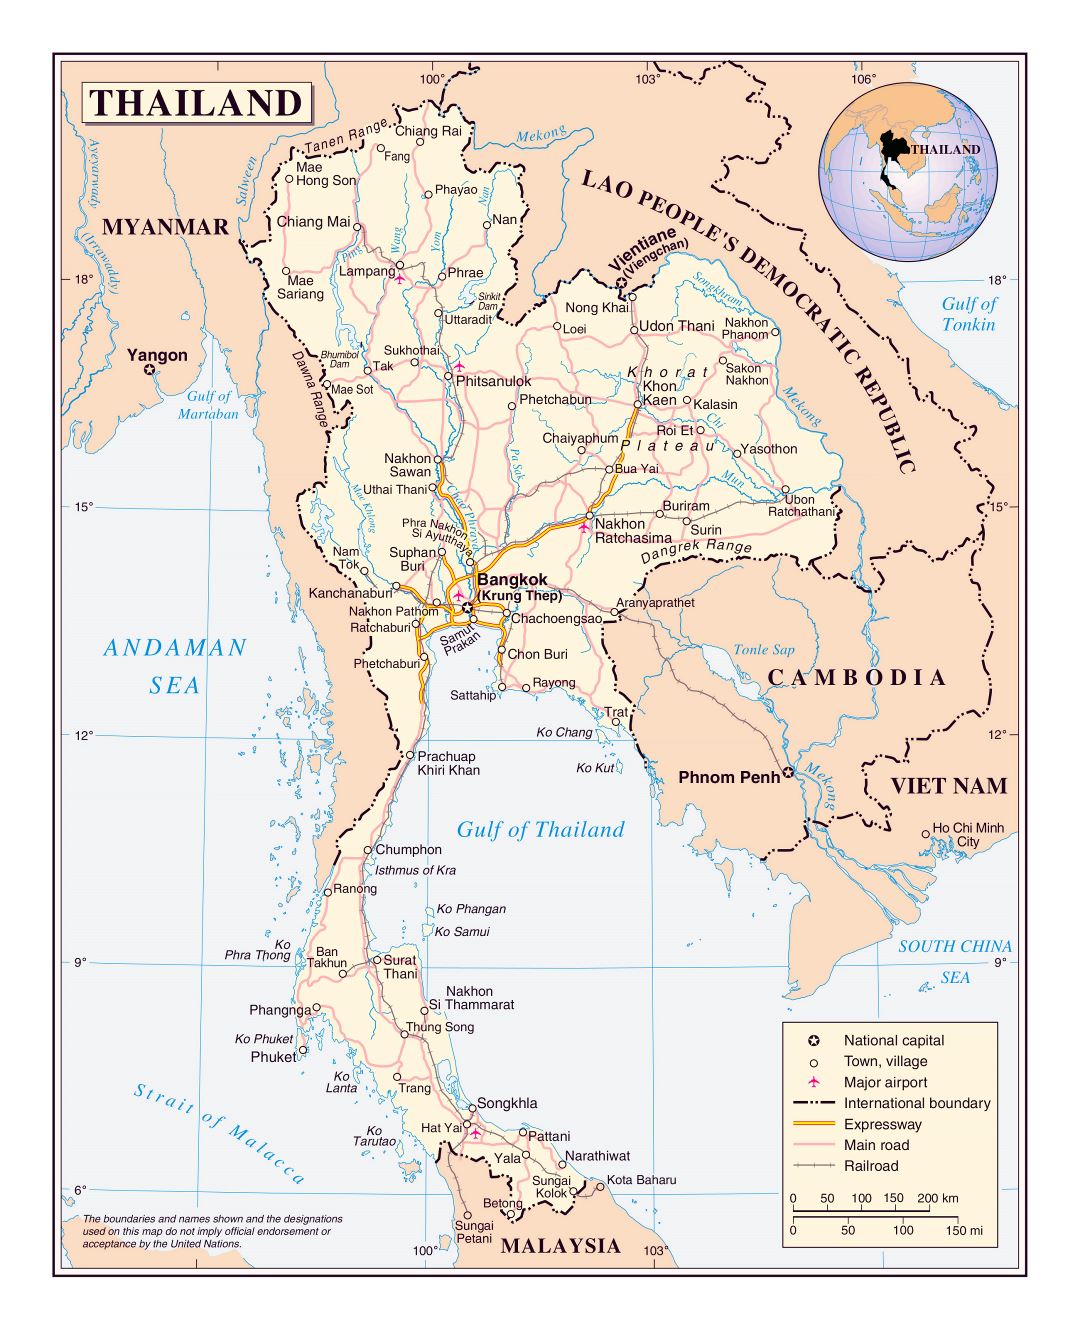 Большая детальная политическая карта Таиланда с дорогами, железными дорогами, крупными городами и аэропортами